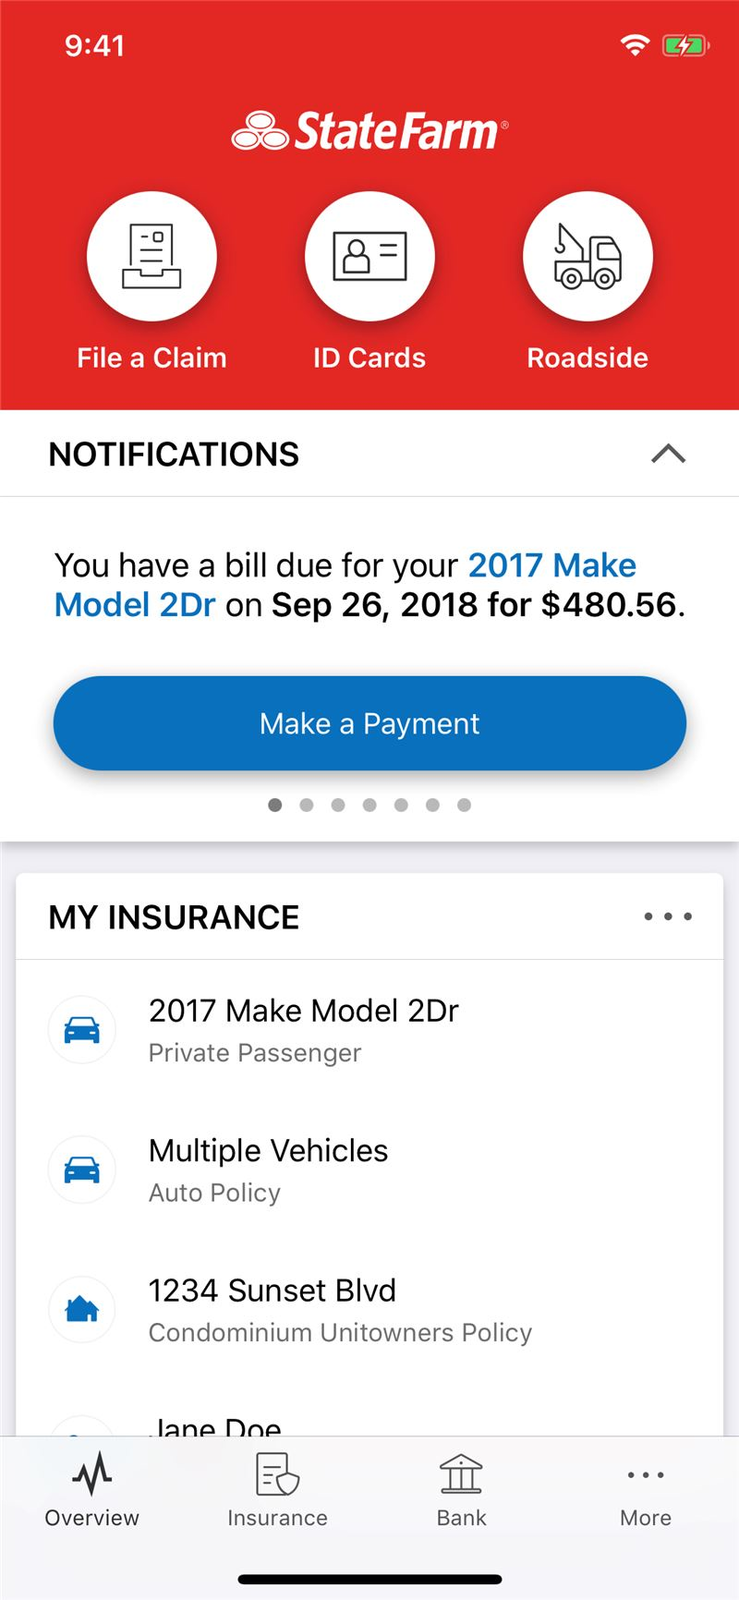 State Farm mobile app auto insurance screen